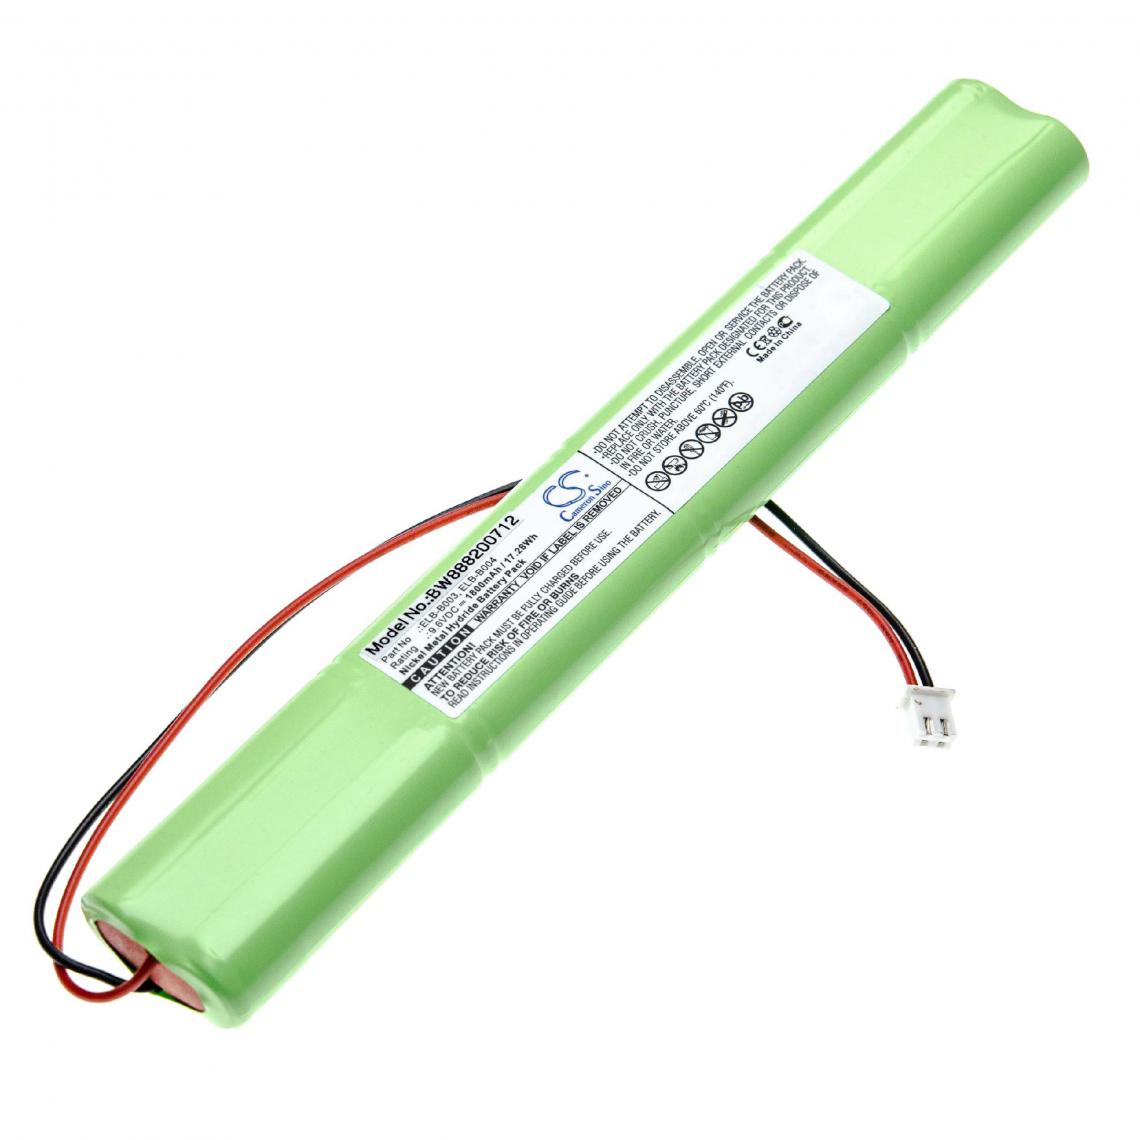 Vhbw - vhbw batterie compatible avec Lithonia BBAT0043A, ELB B003, ELB B004, ELB-B003, ELB-B004, ELBB003, ELBB004 issues/éclairage de secours (1800mAh) - Autre appareil de mesure